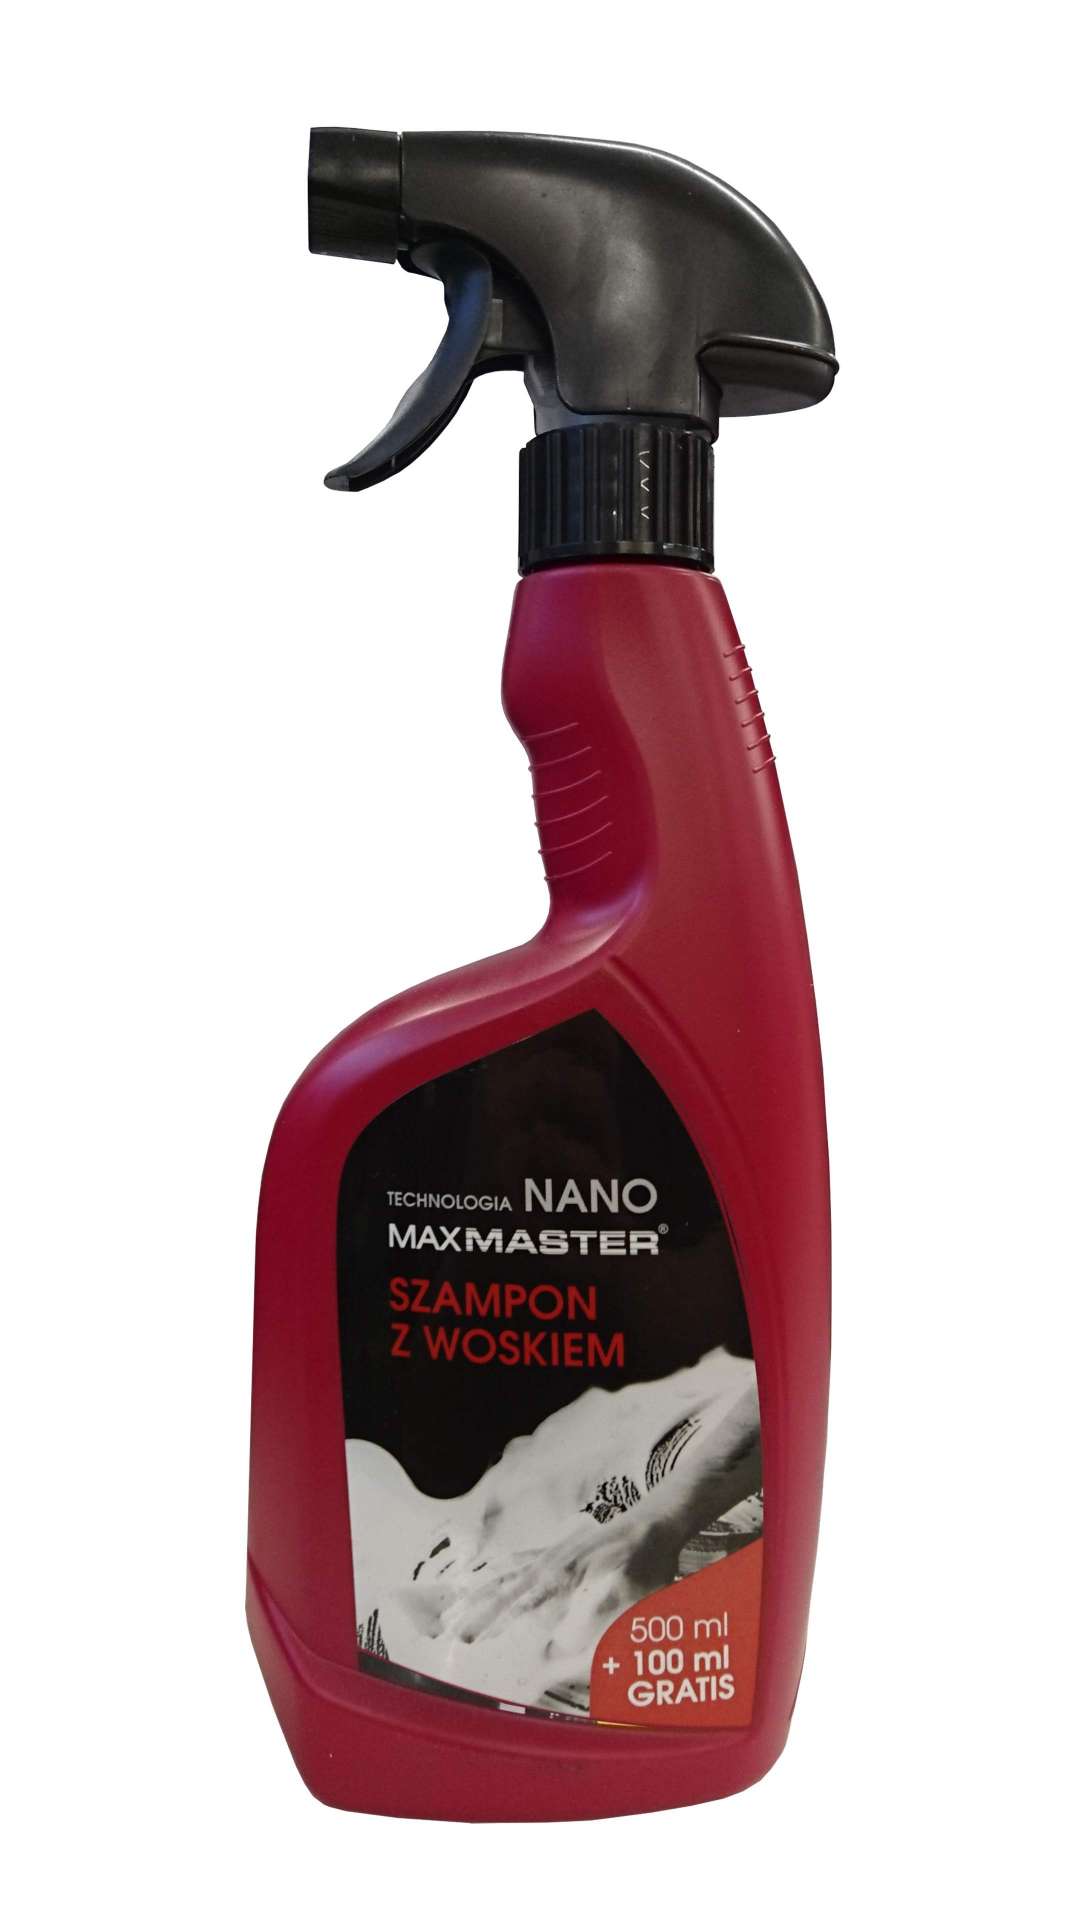 maxmaster szampon z woskiem